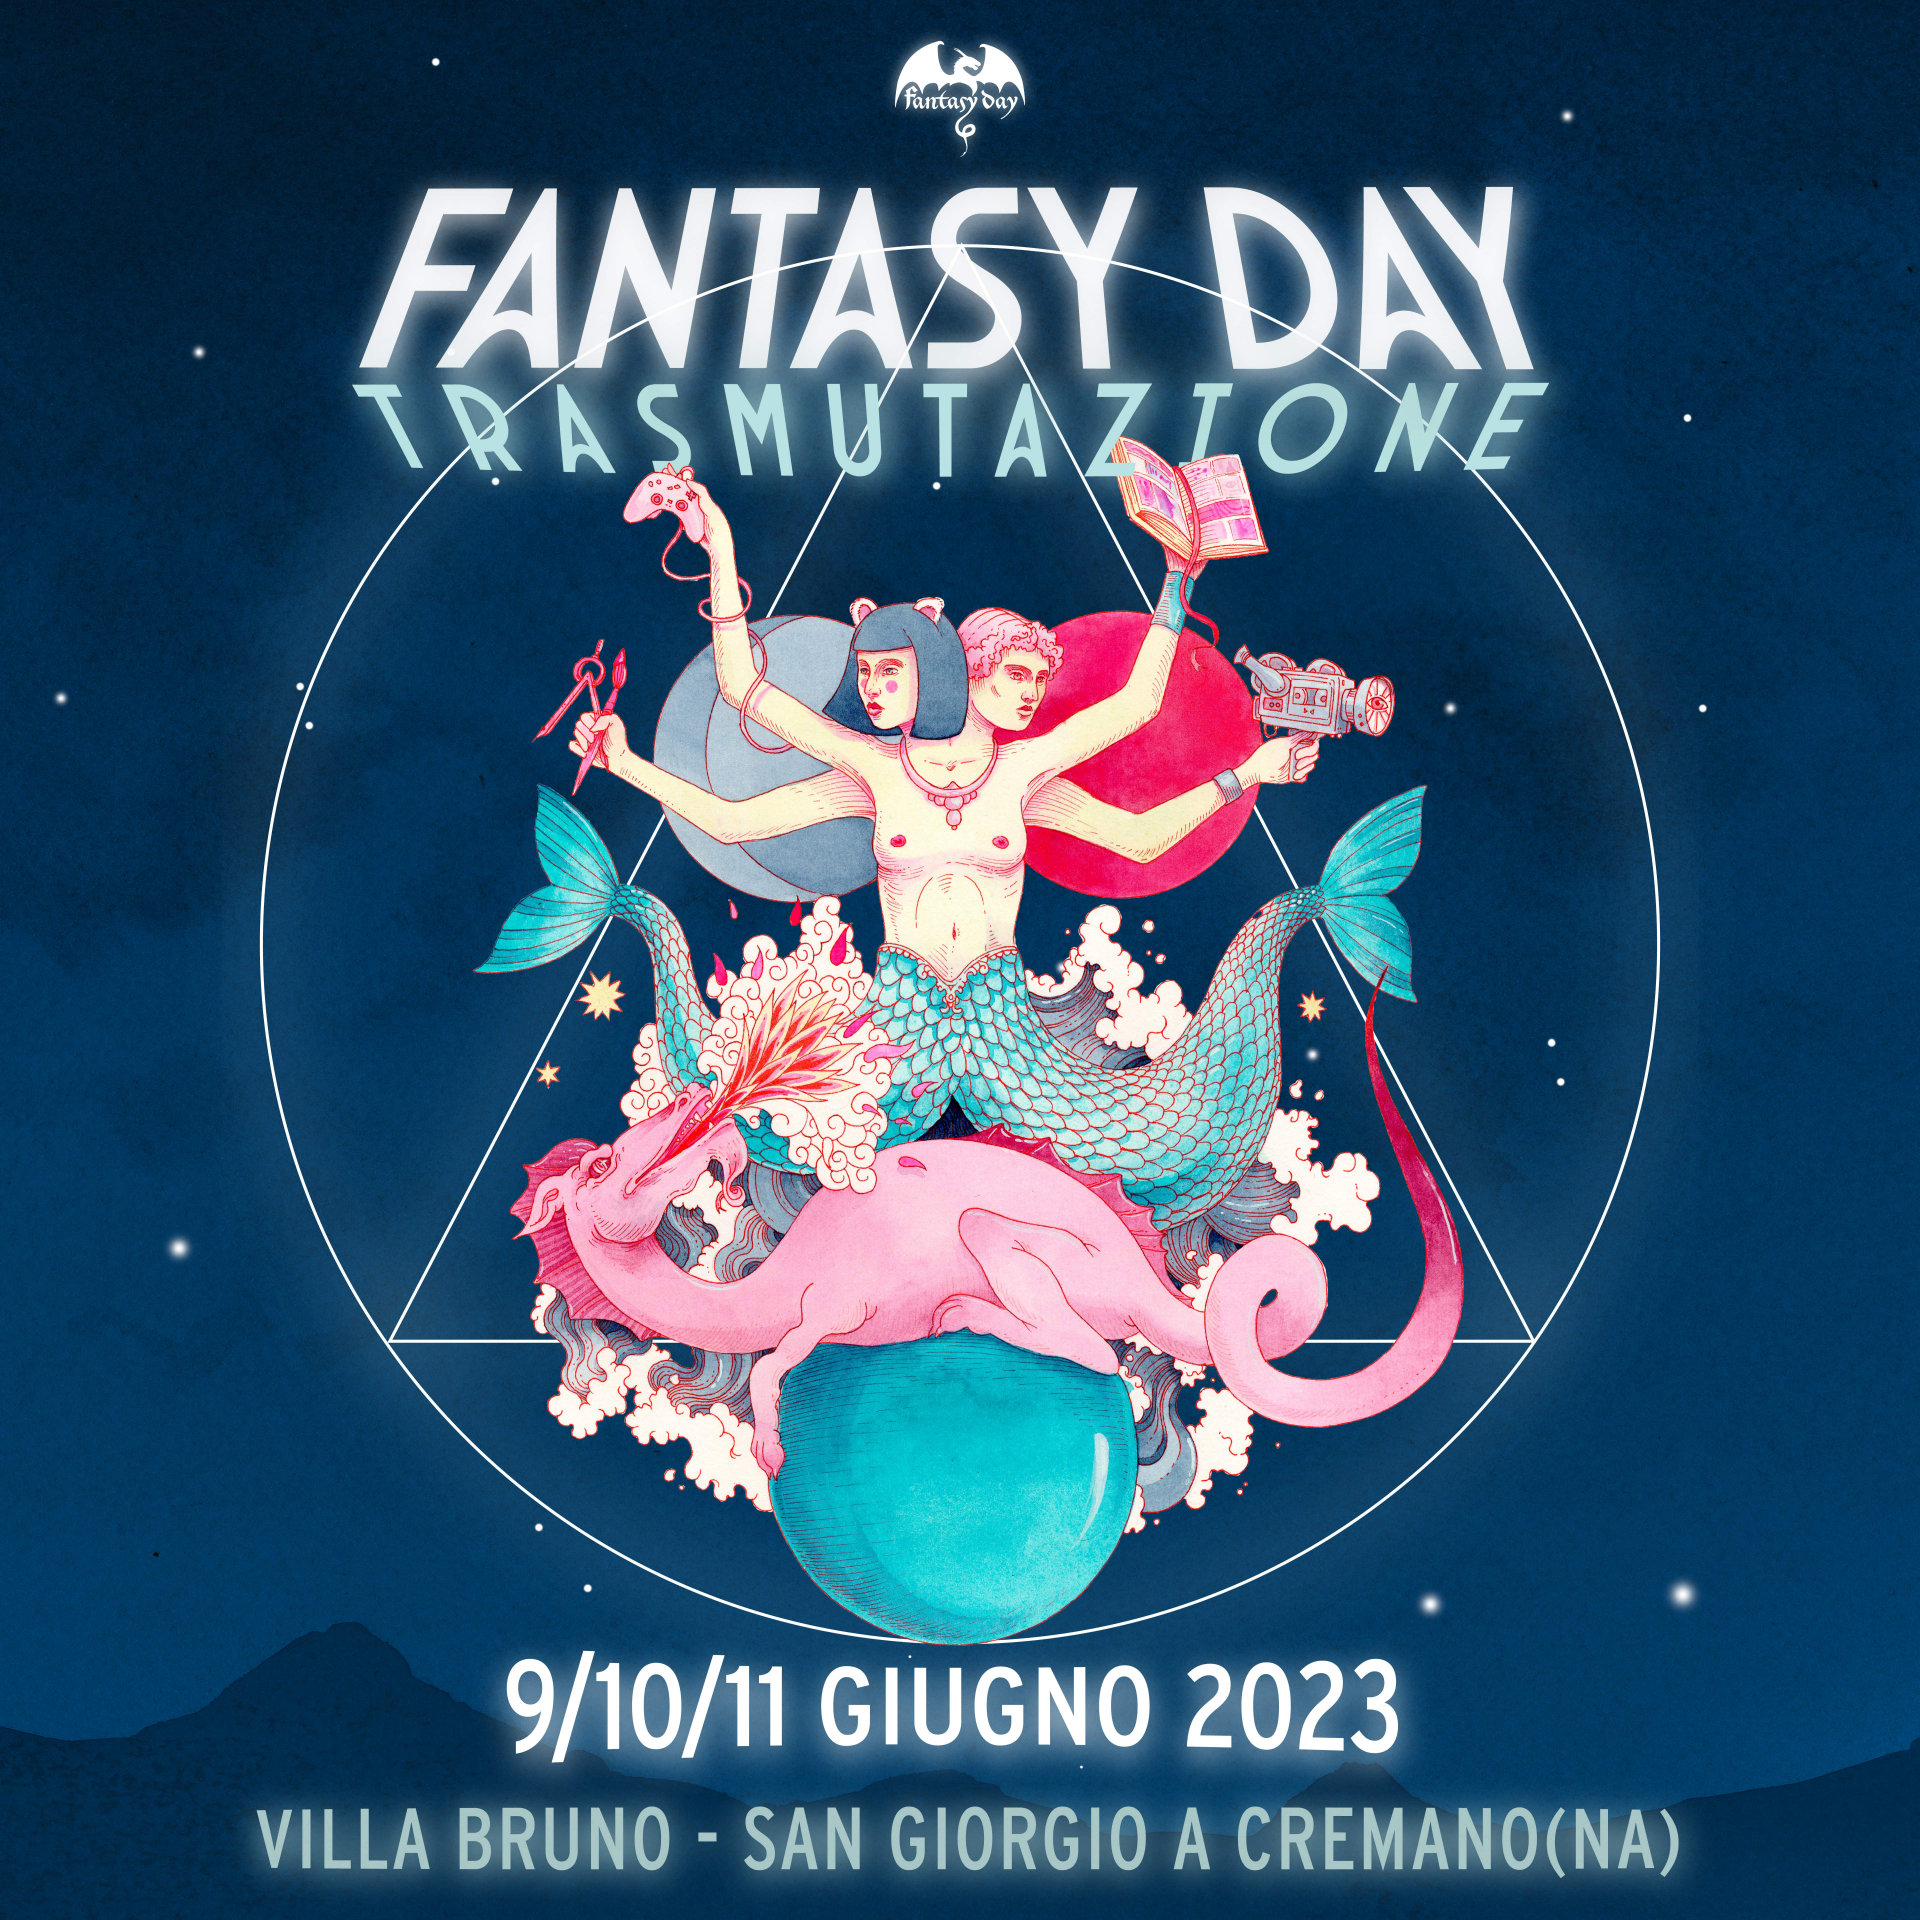 Fantasy Day 2023: dal 9 all’11 giugno a San Giorgio a Cremano